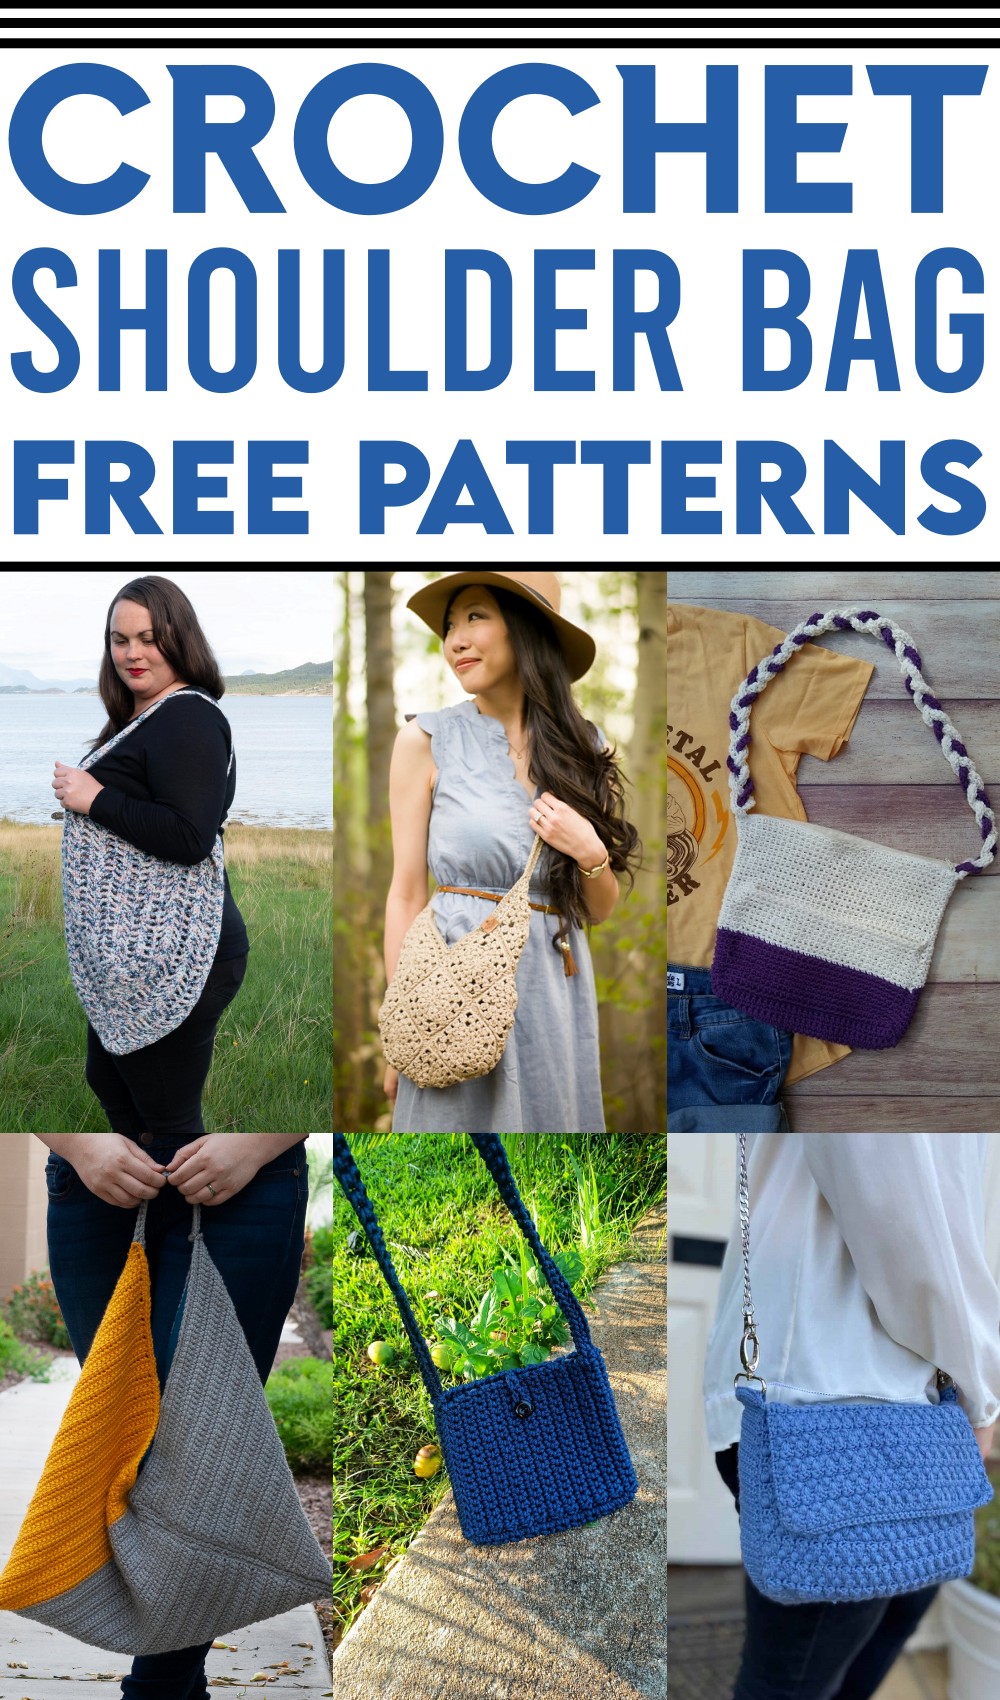 Free Crochet Shoulder Bag Patterns 1